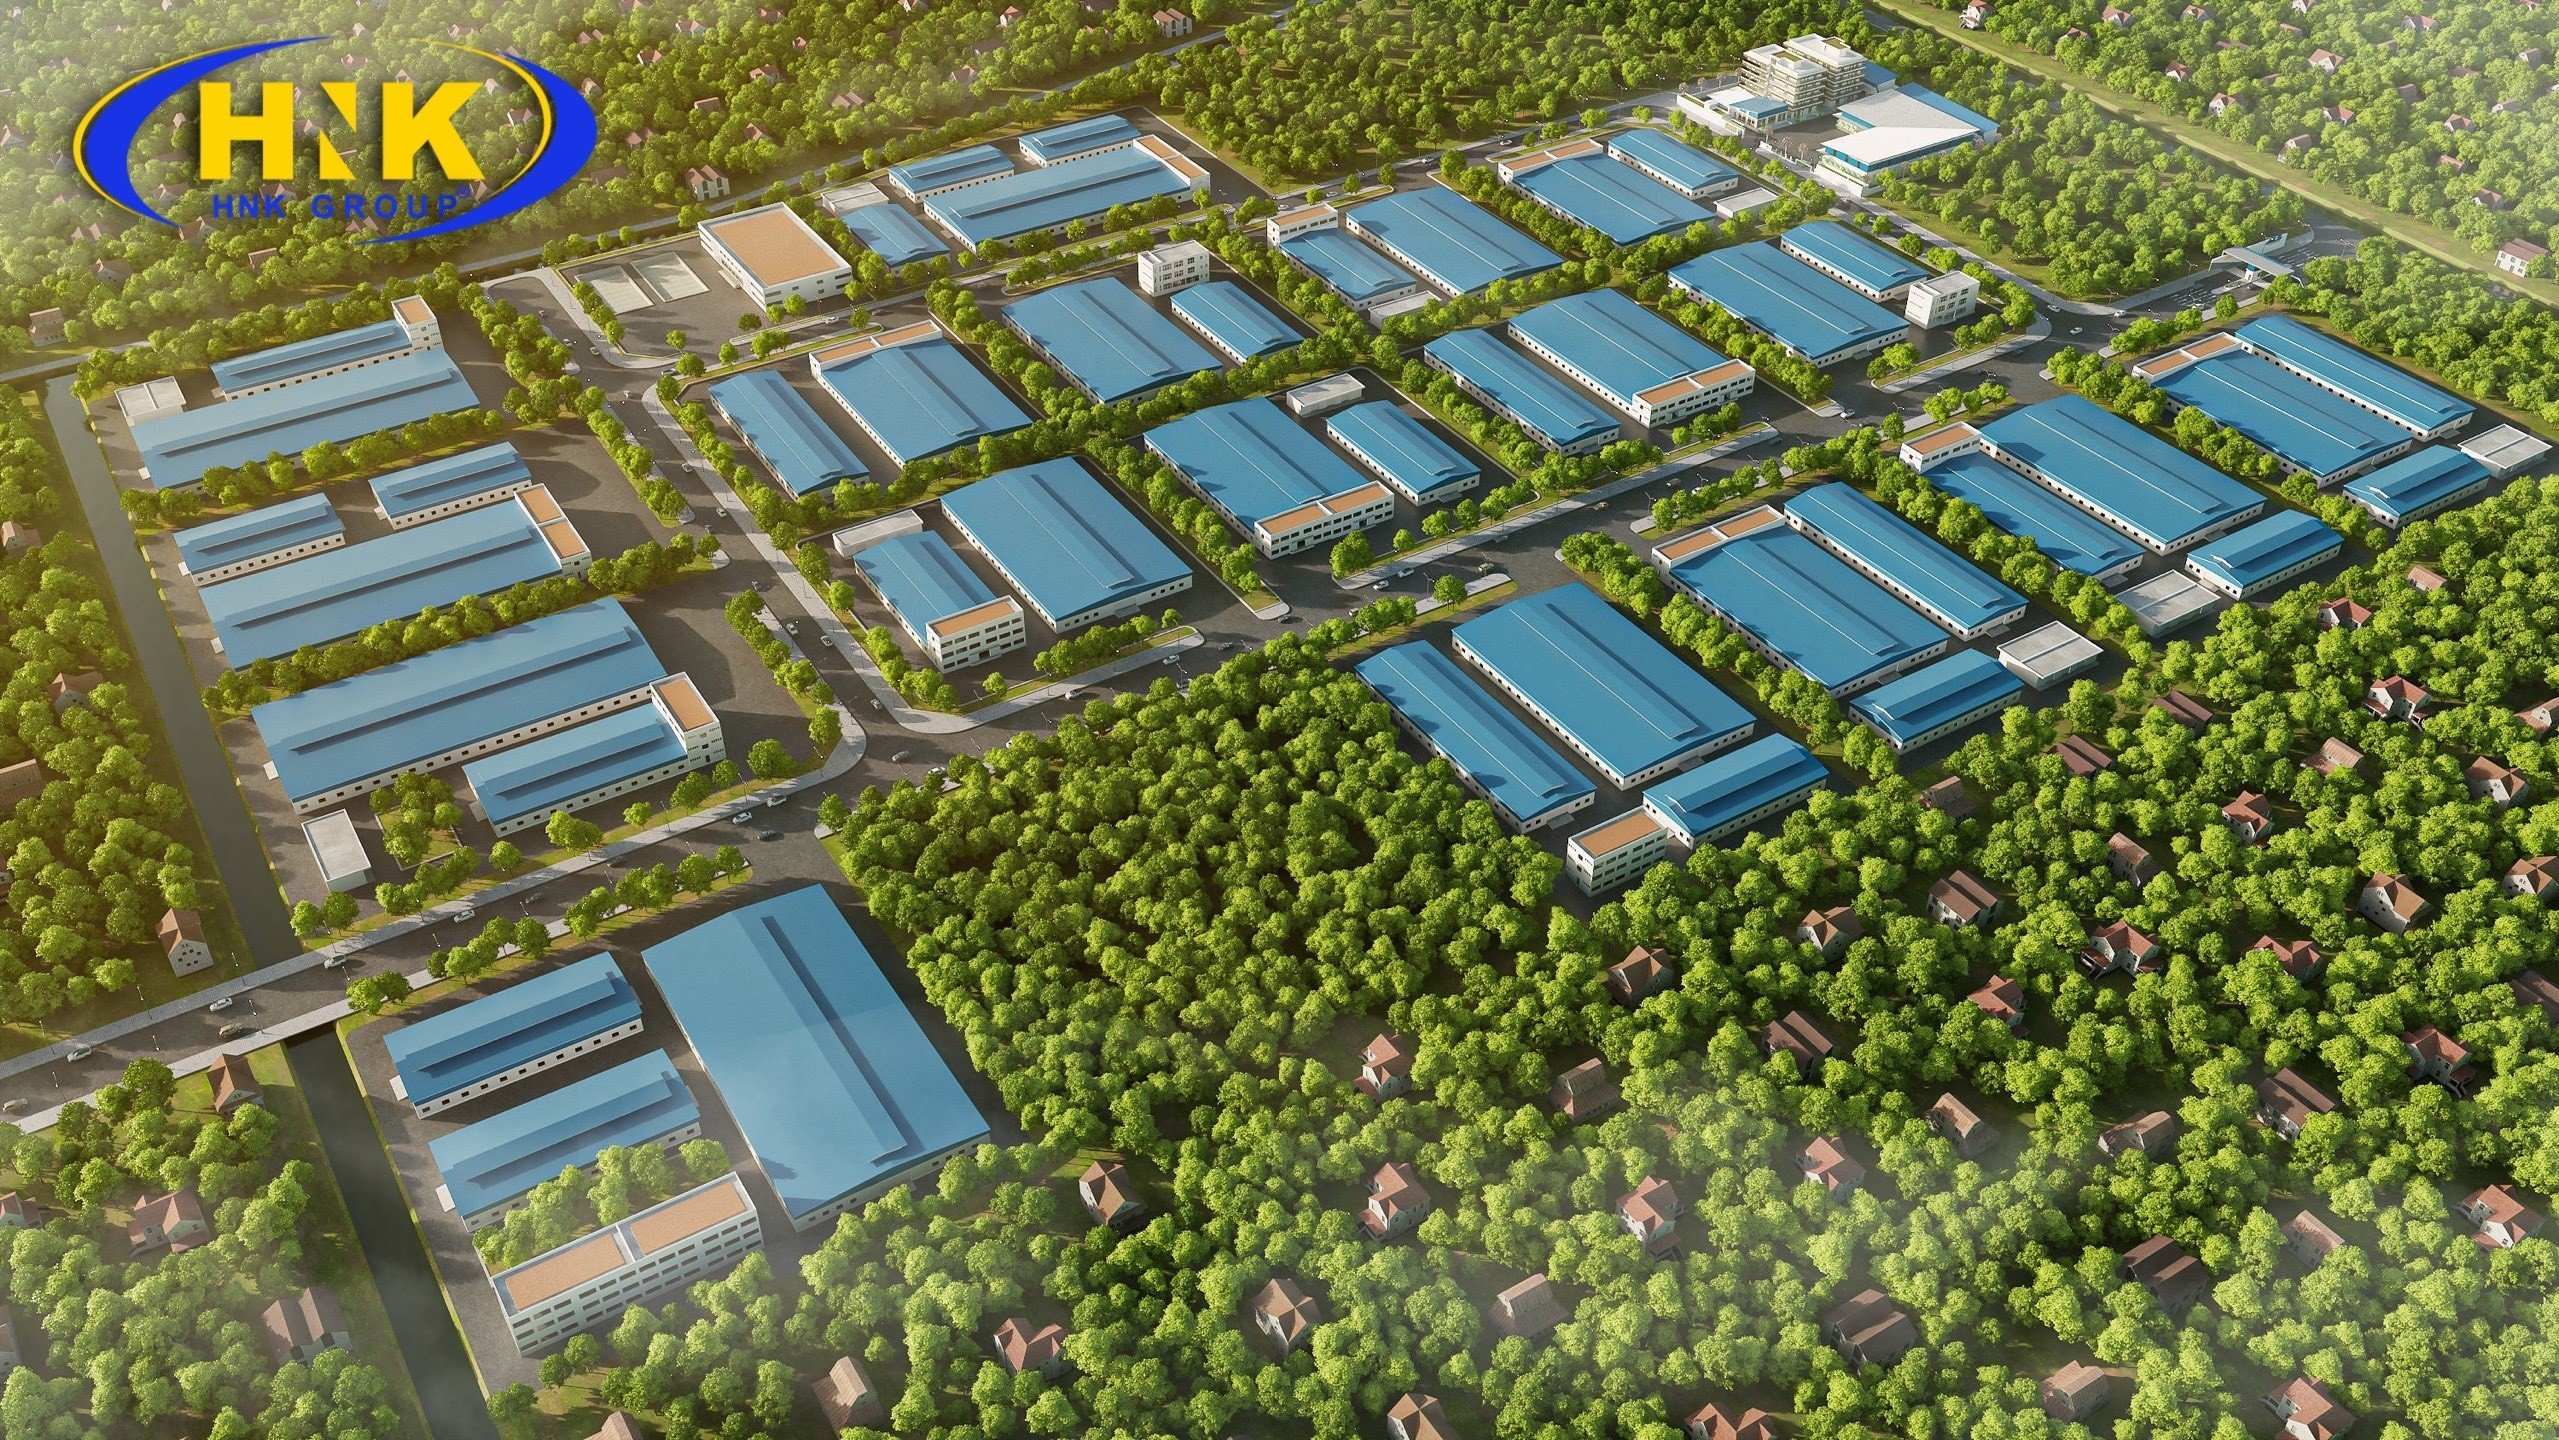 TOPLAND: Bán 75ha đất cụm công nghiệp có cắt nhỏ tại Hưng yên